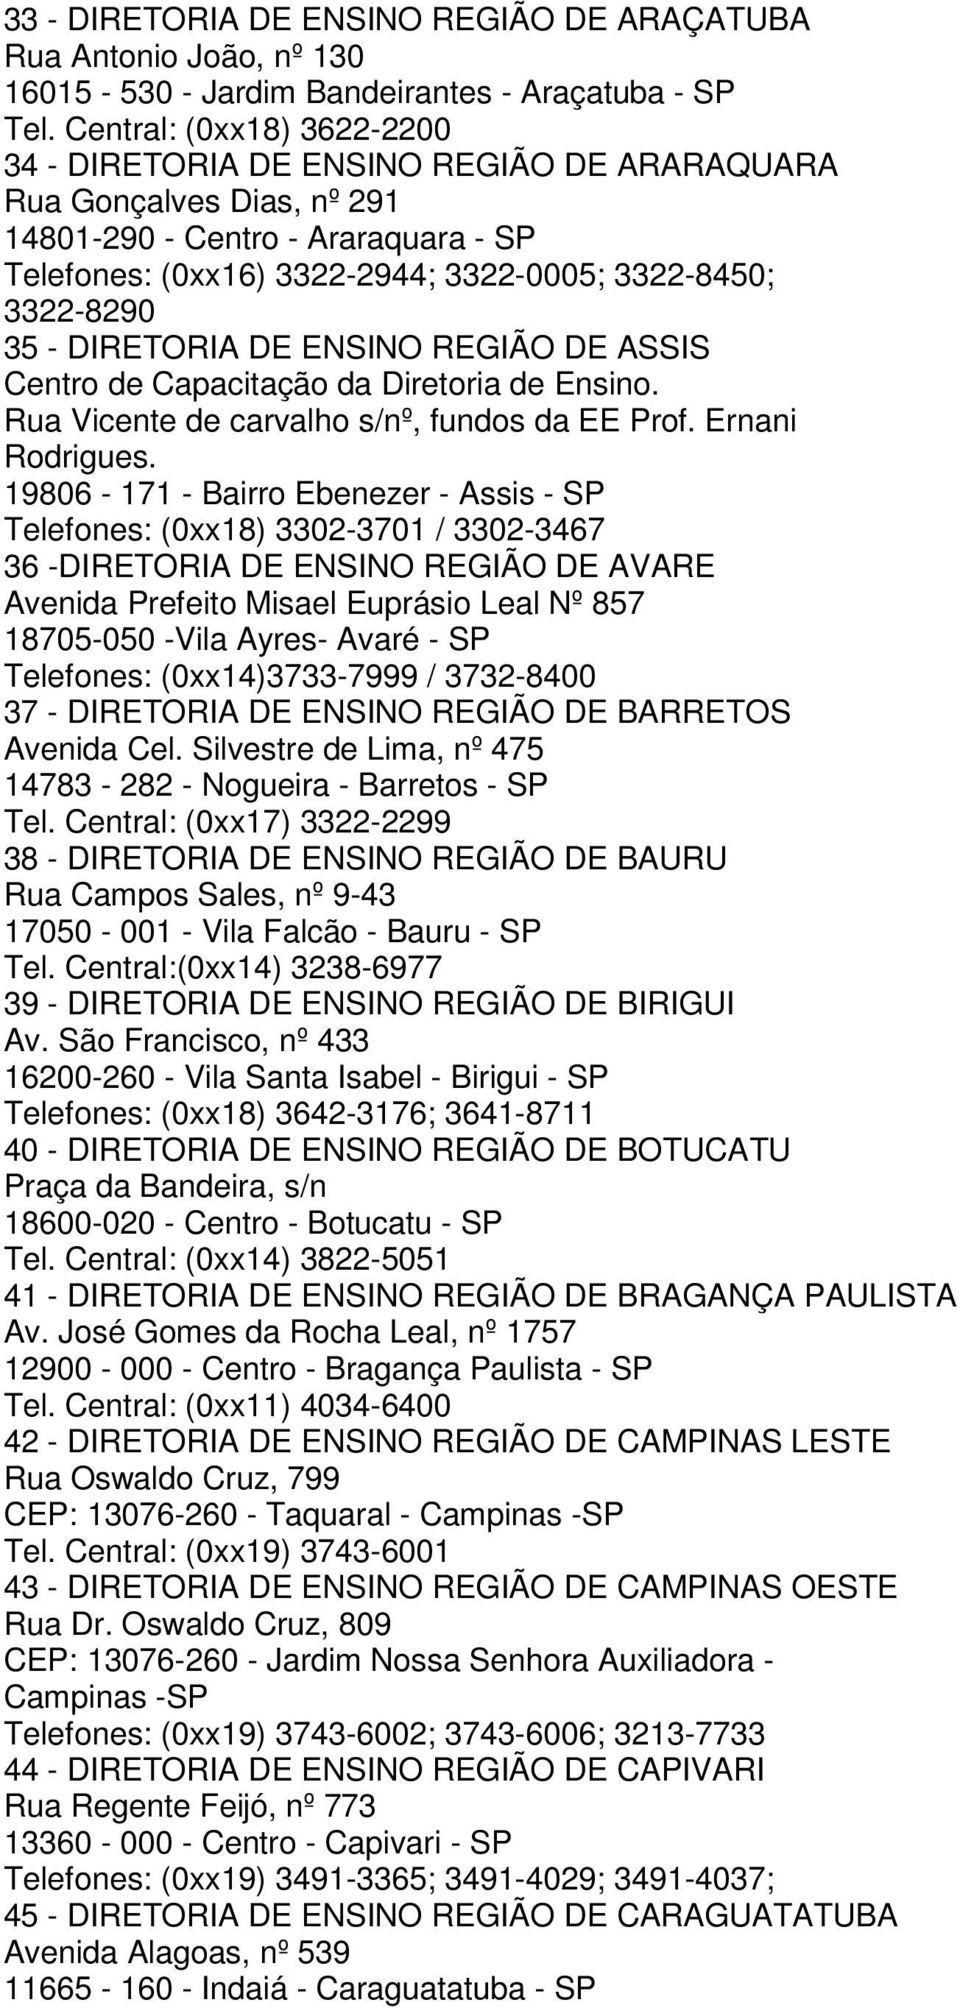 35 - DIRETORIA DE ENSINO REGIÃO DE ASSIS Centro de Capacitação da Diretoria de Ensino. Rua Vicente de carvalho s/nº, fundos da EE Prof. Ernani Rodrigues.